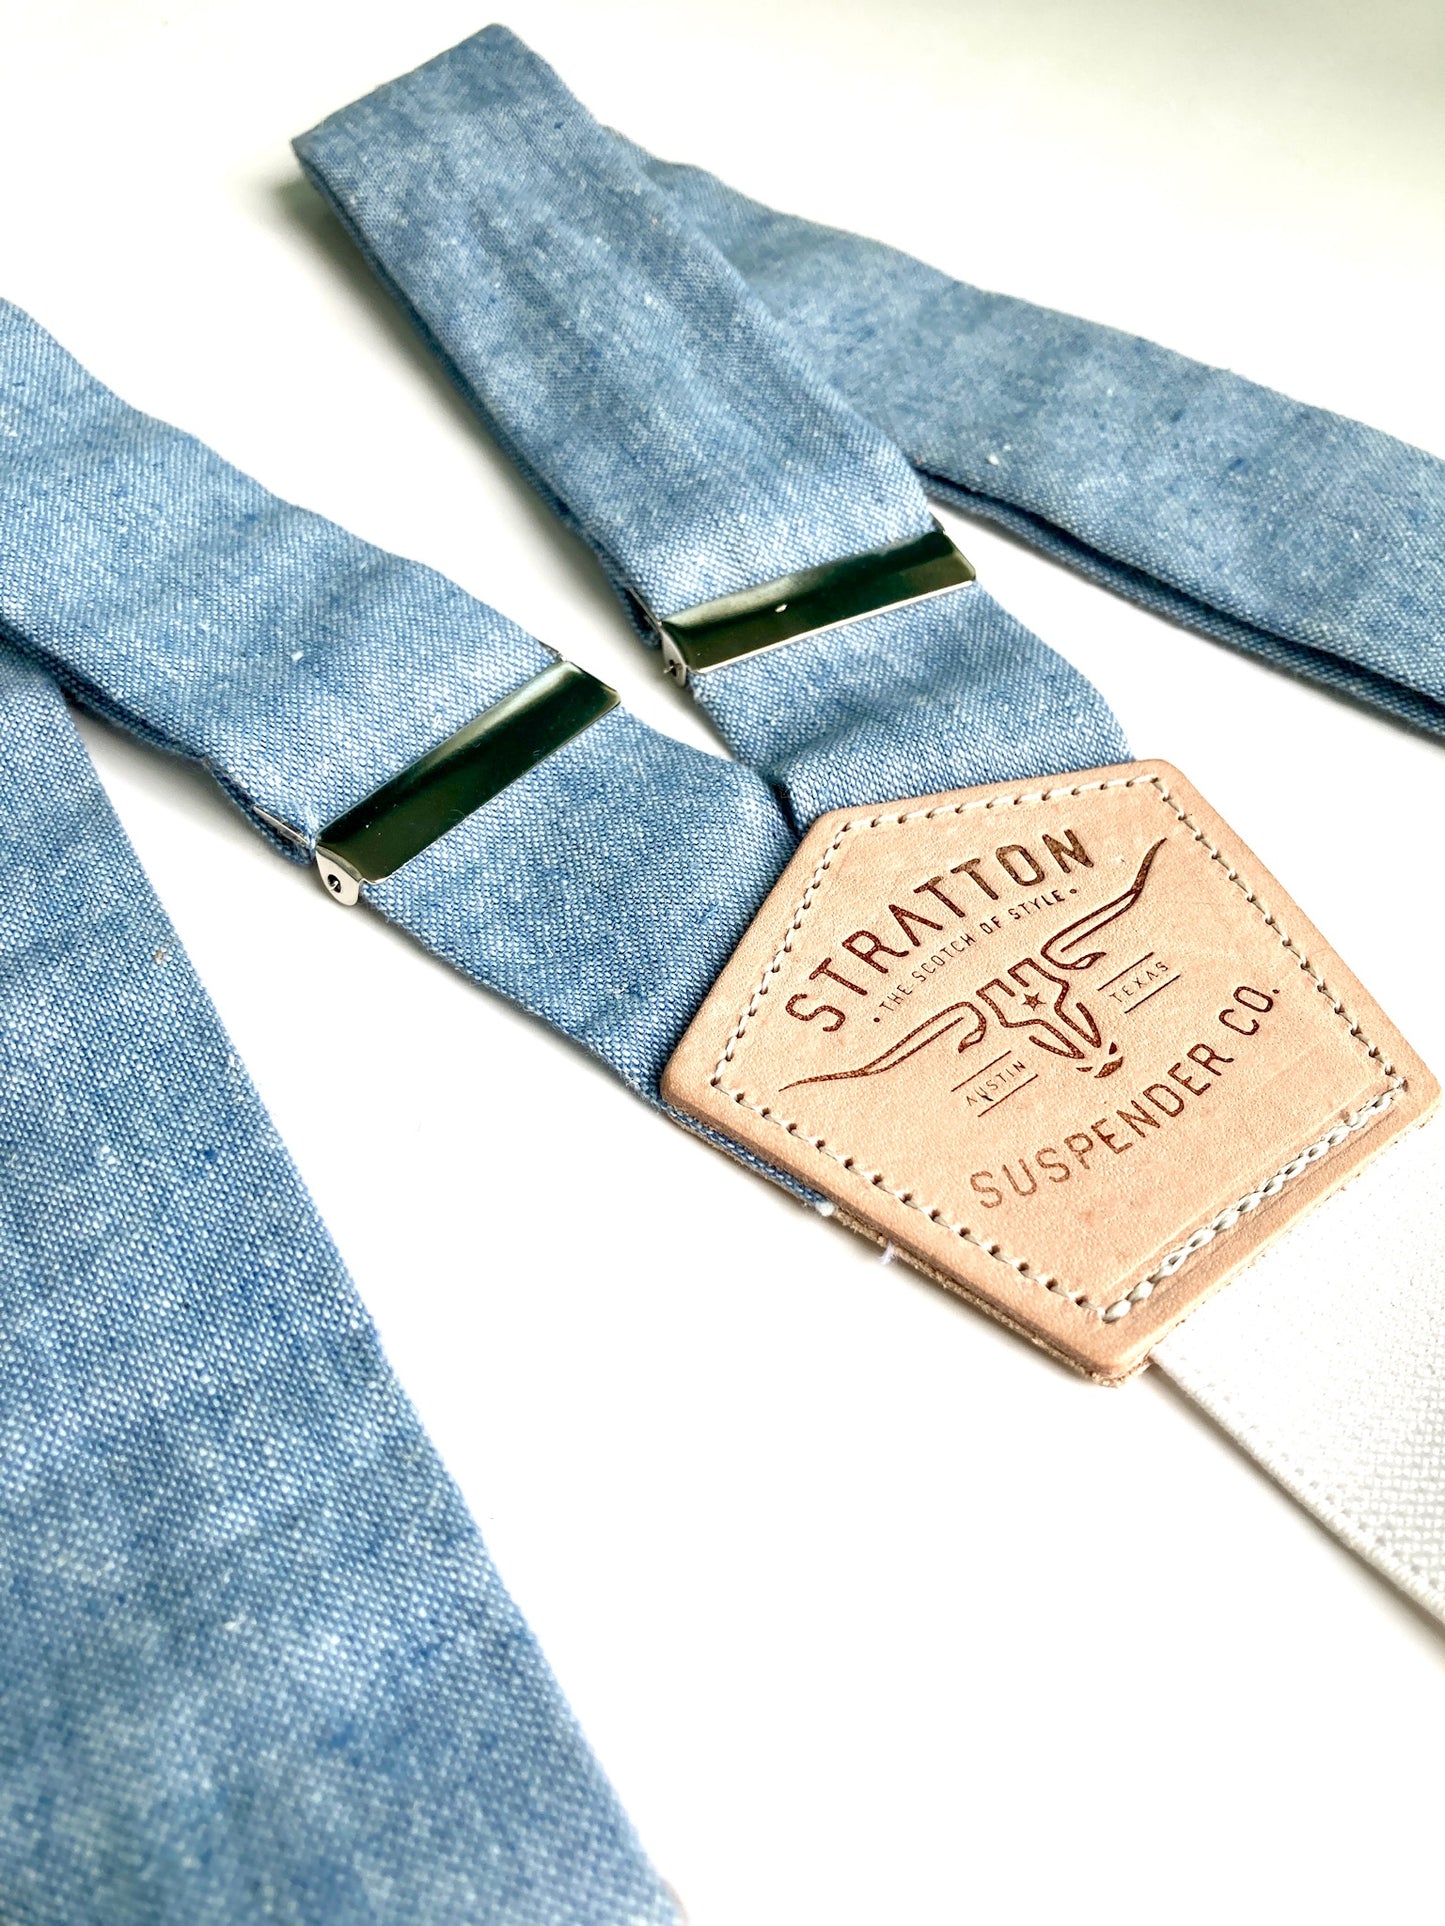 Stratton Suspenders in Frio River Blue Linen 